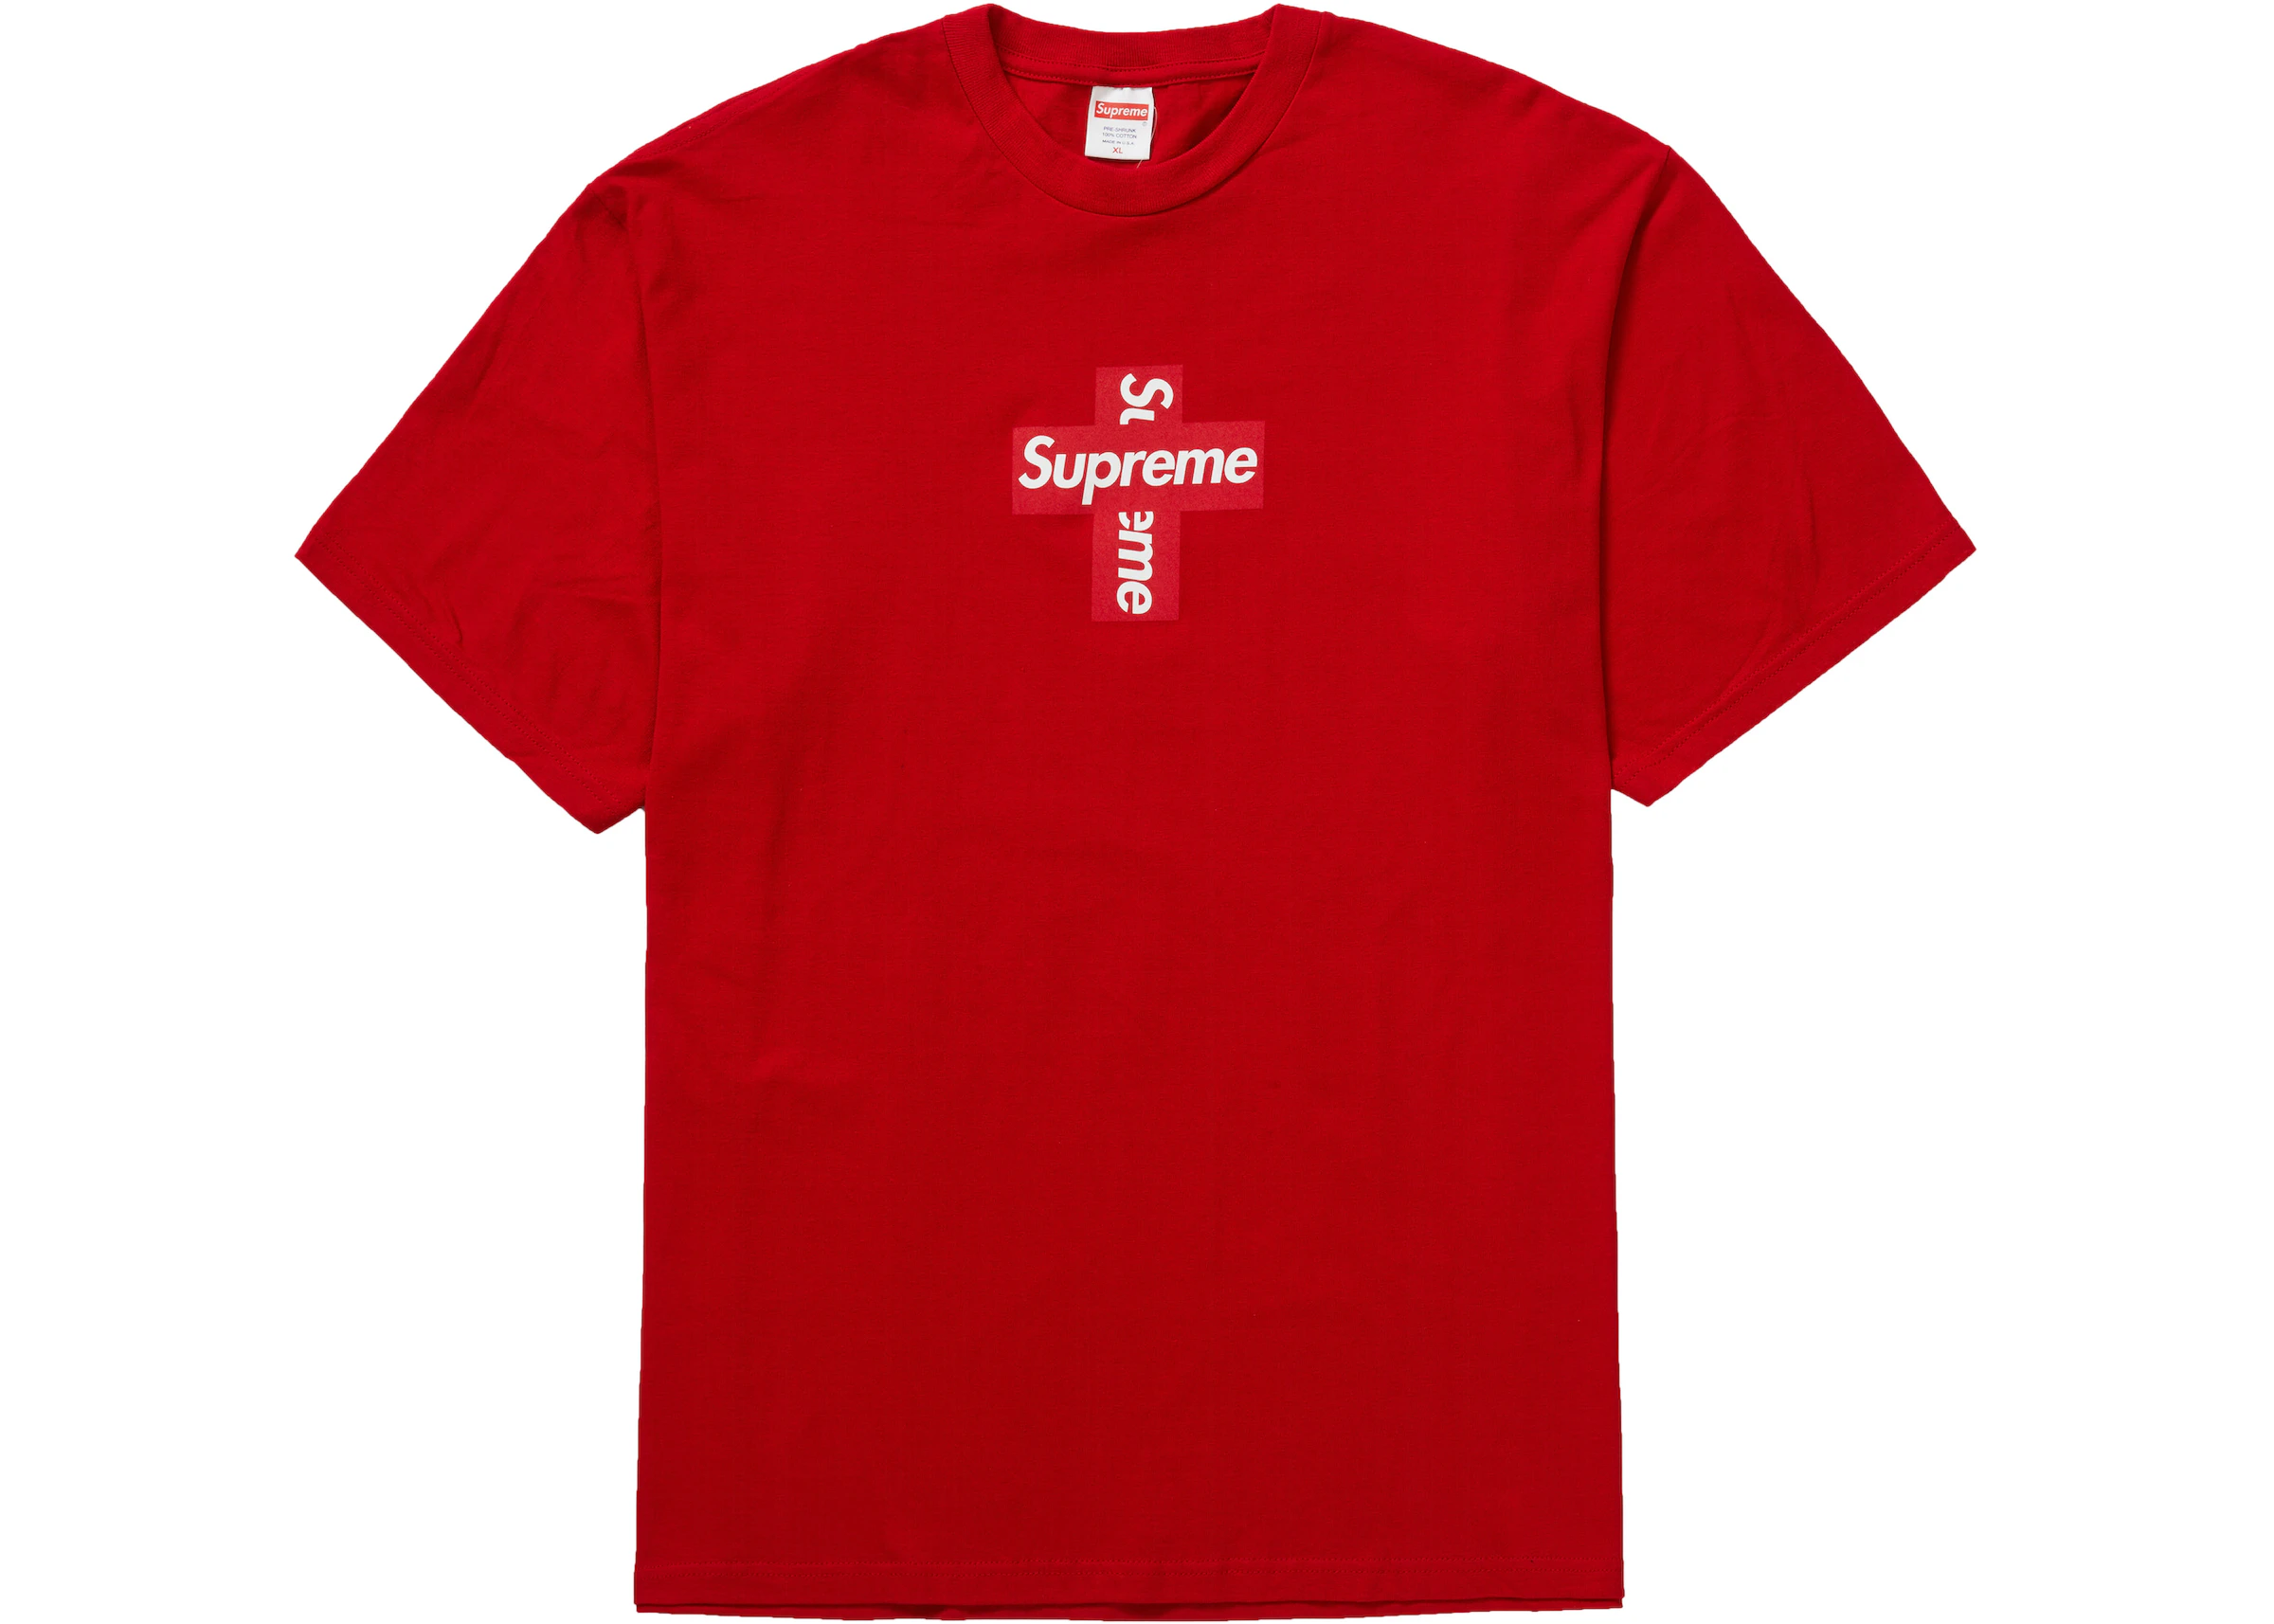 Snestorm liter Indsigt Supreme Cross Box Logo Tee Red - FW20 - US